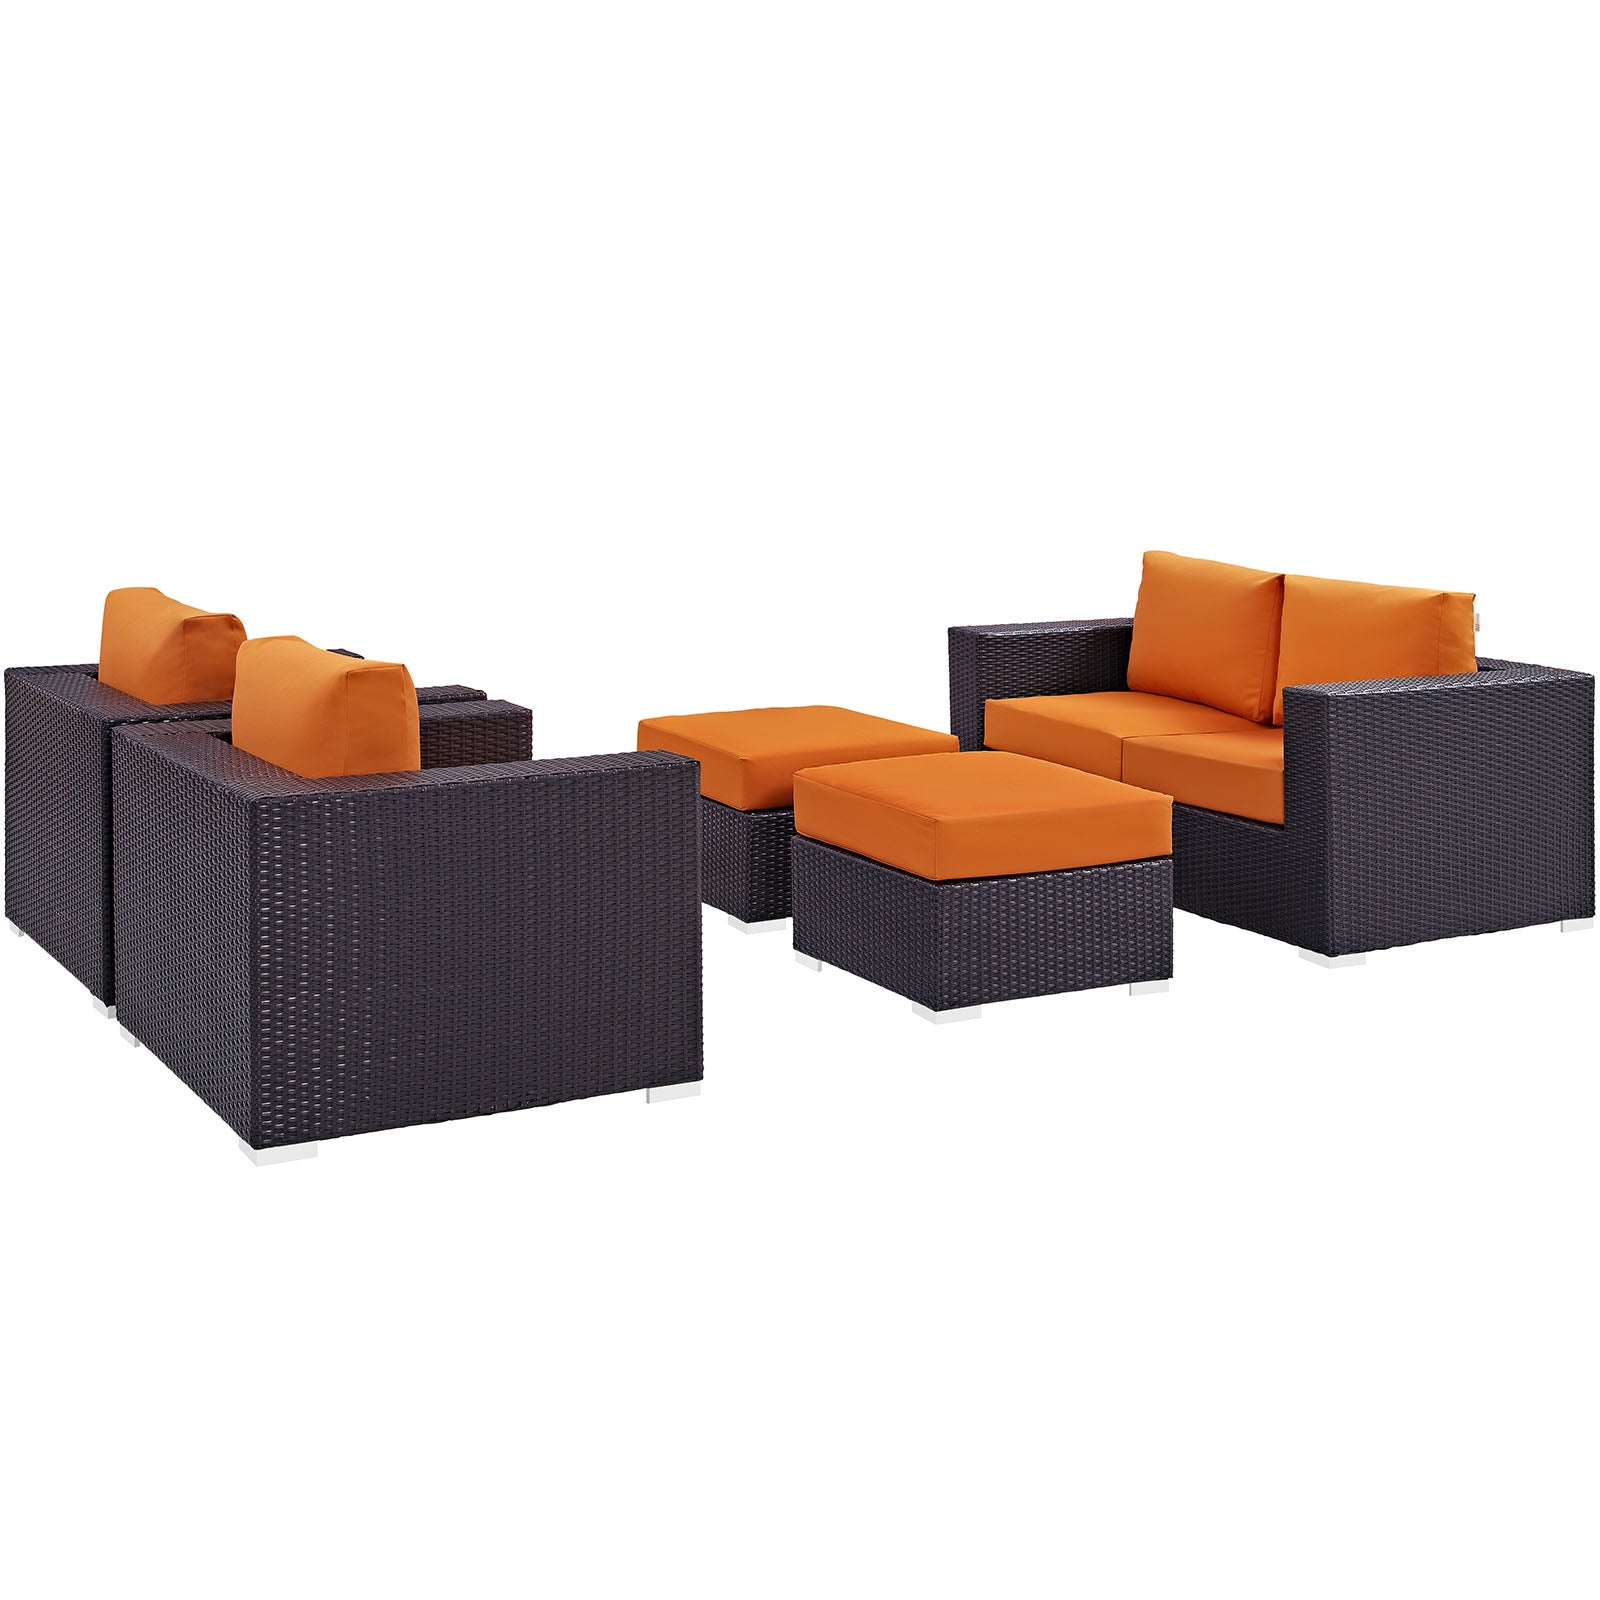 Modway Outdoor Conversation Sets - Convene 5 Piece Outdoor 130.5"W Patio Sofa Set Espresso Orange